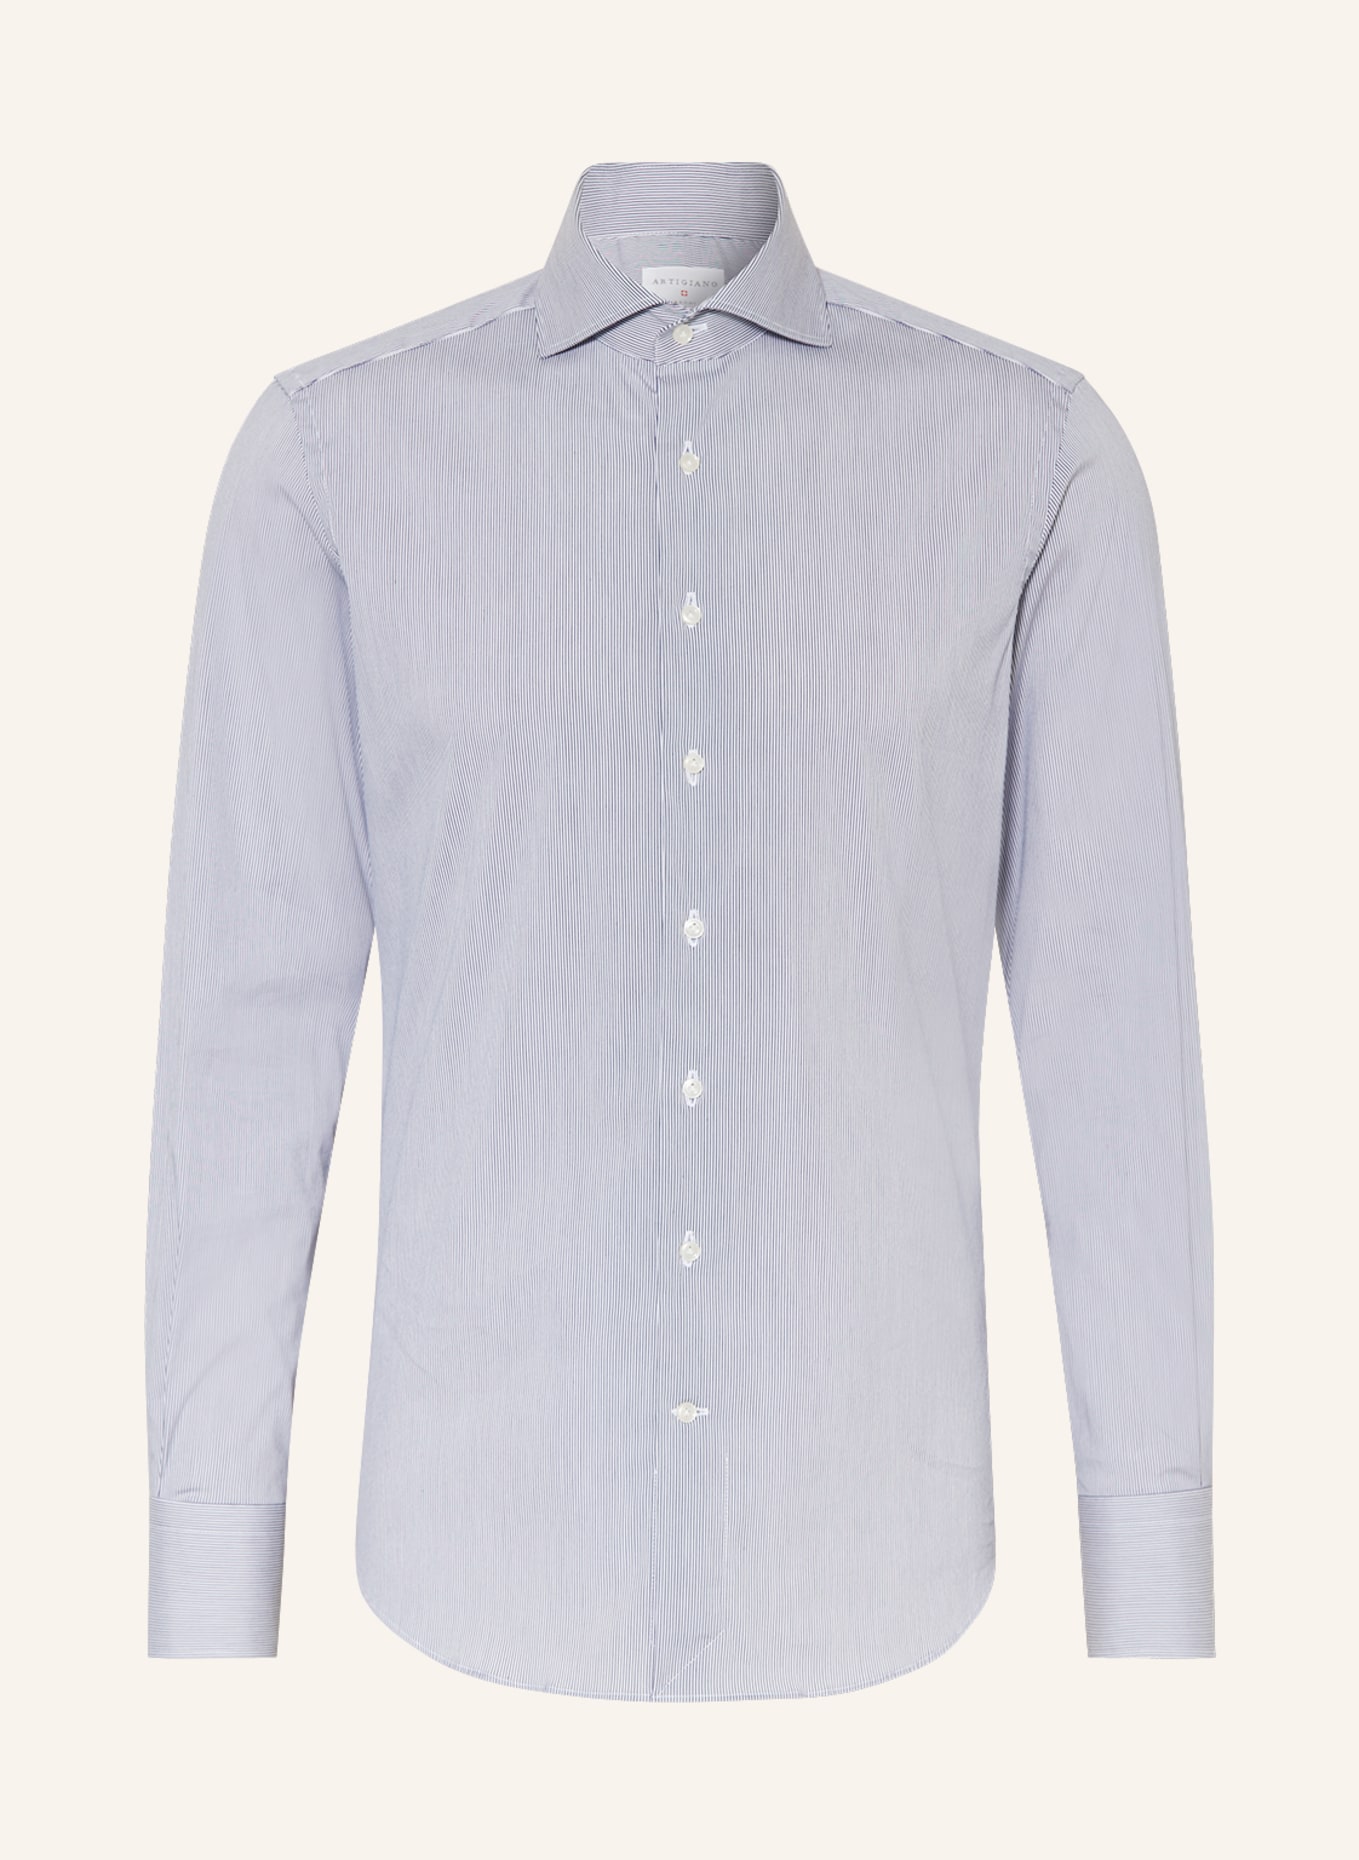 ARTIGIANO Shirt slim fit, Color: DARK BLUE/ WHITE (Image 1)